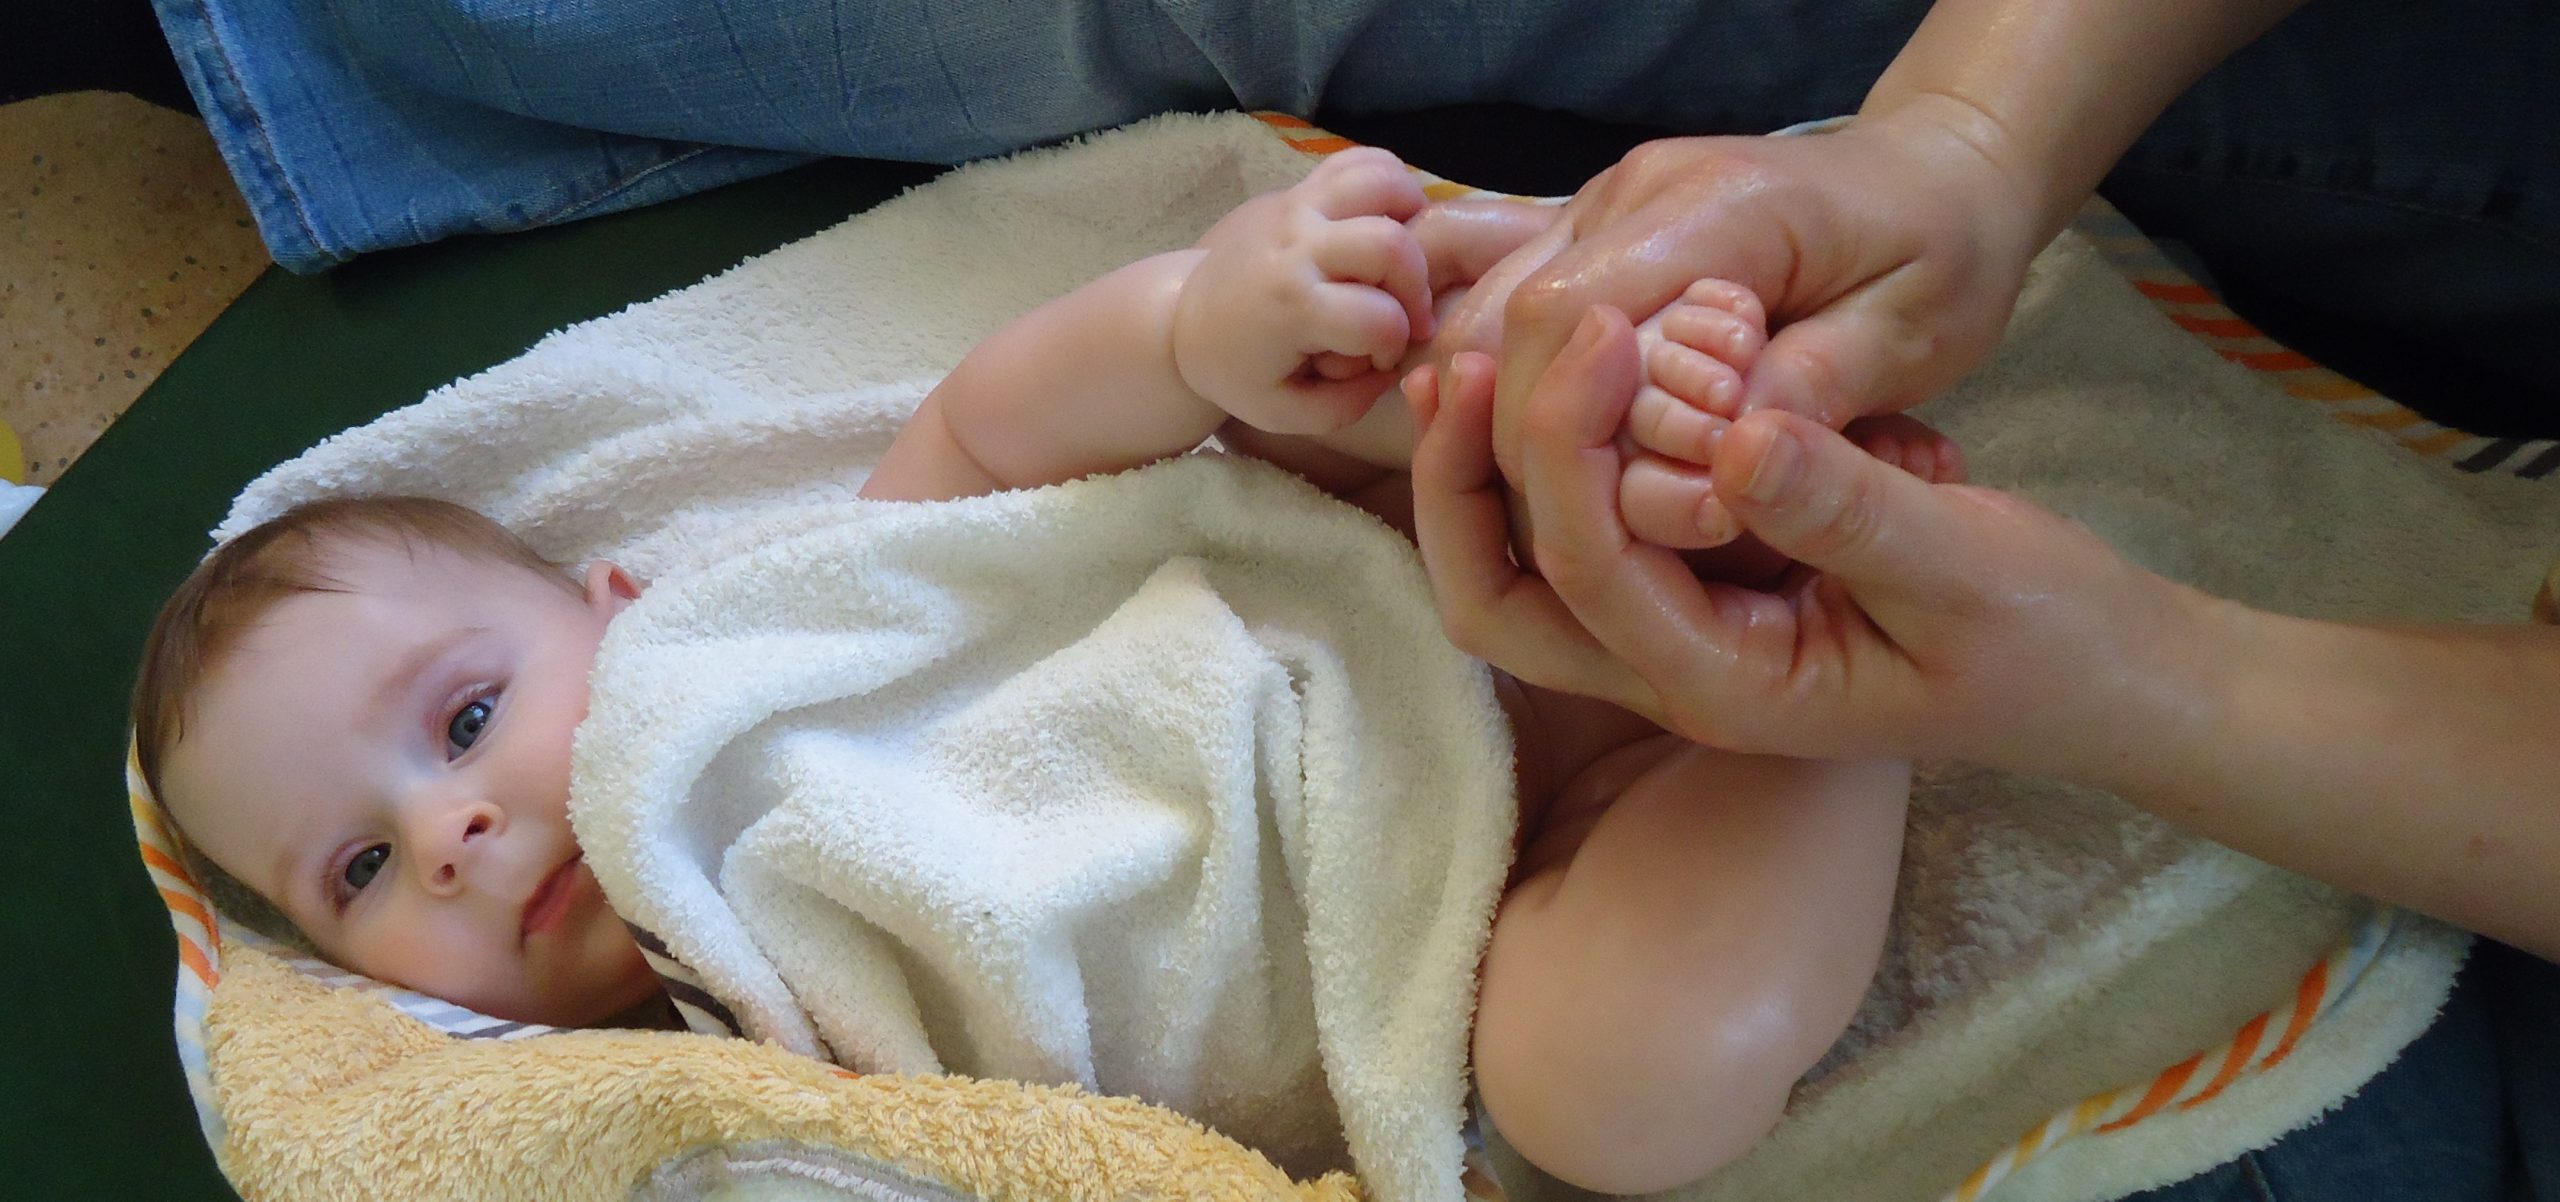 Babymassage … dein Kind mit Berührung füttern!